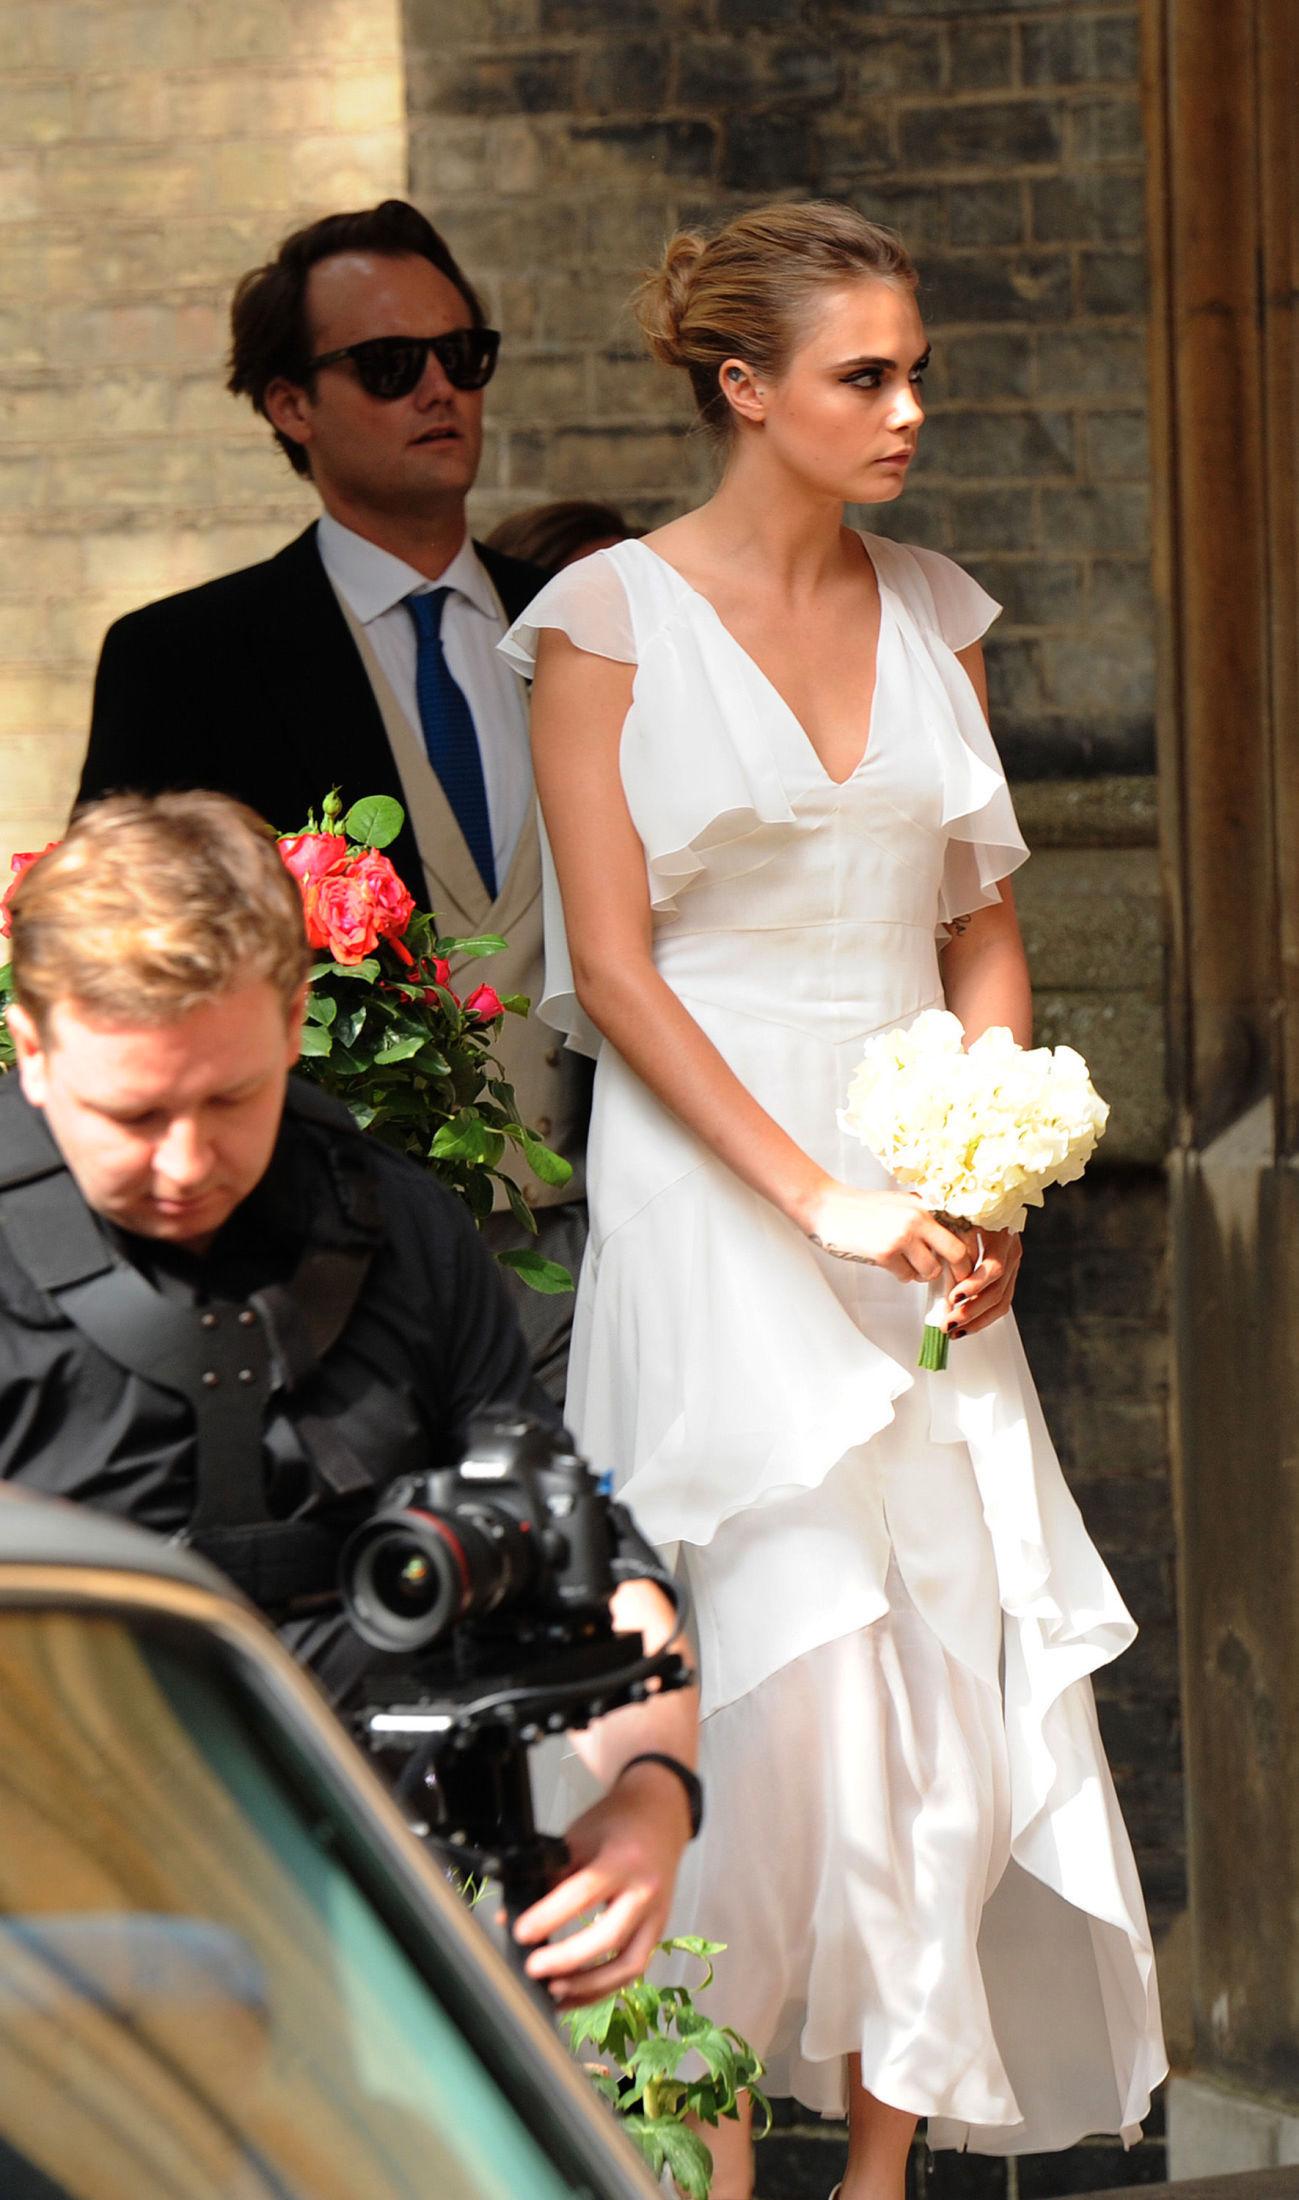 CHANEL: Karl Lagerfeld, sjefdesigner hos Chanel, spesiellaget brudepike-kjolen til Cara til bryllupet 16. mai 2014. Foto: Getty Images